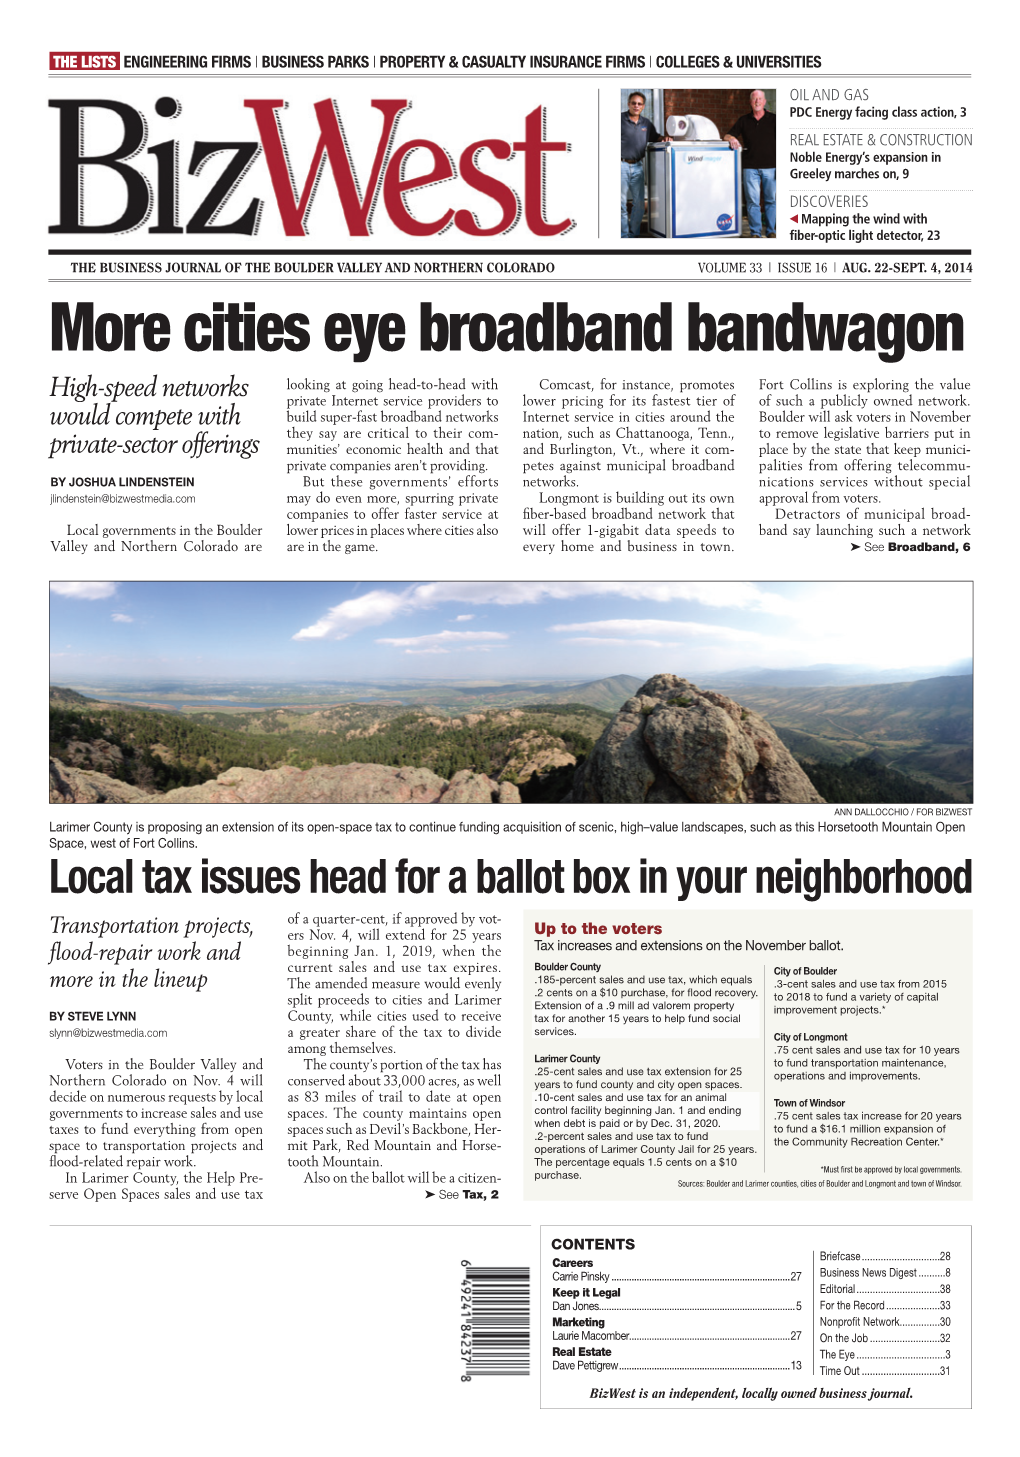 Cities Eye Broadband Bandwagon